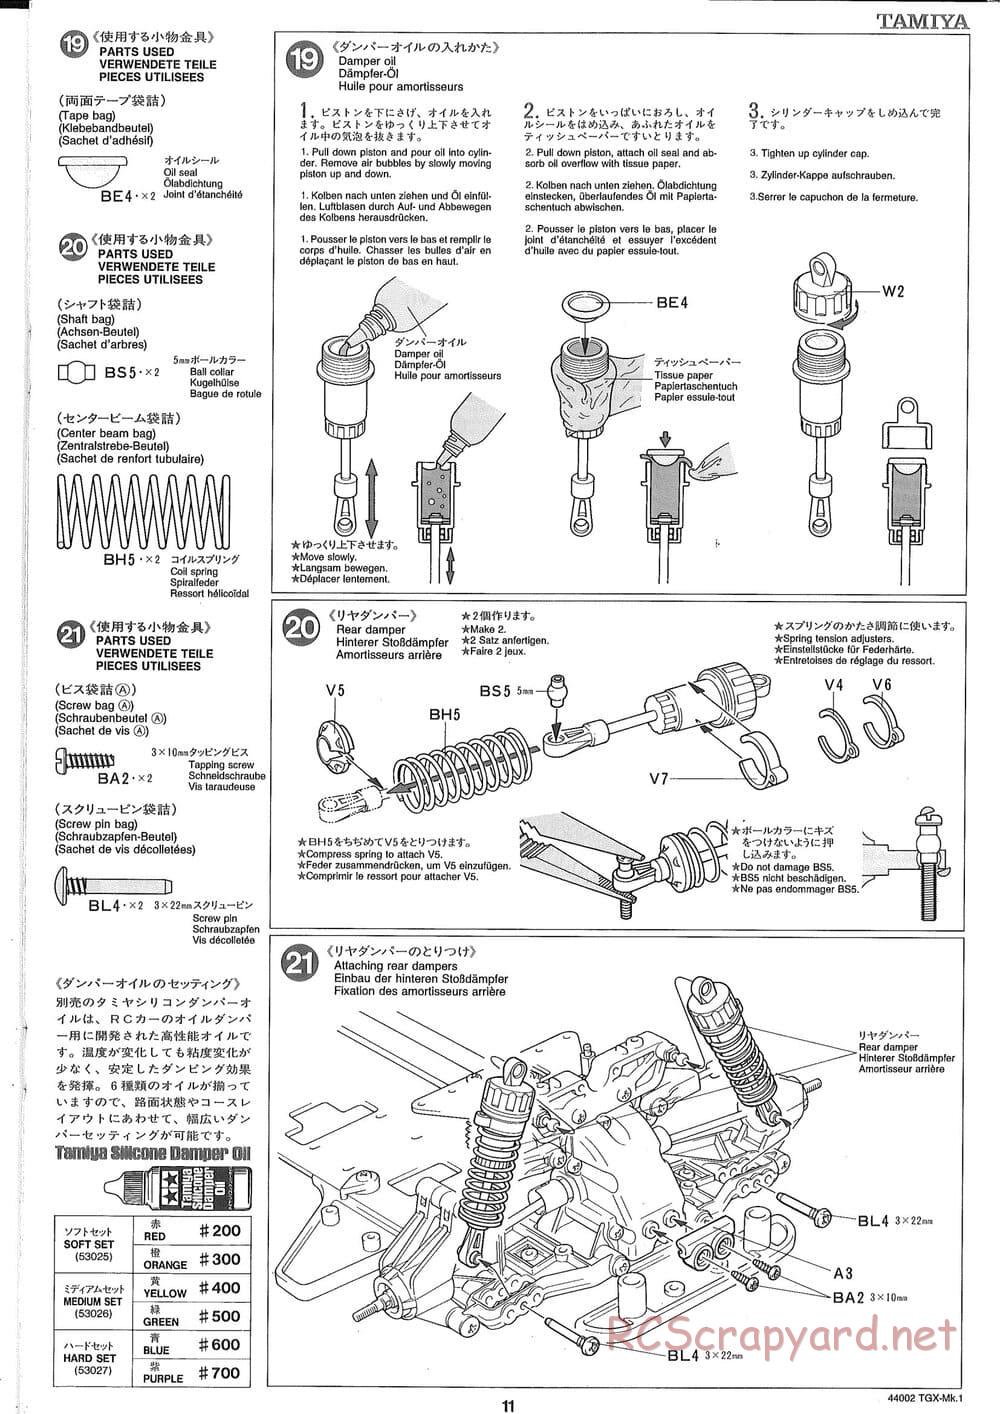 Tamiya - TGX Mk.1 TS Chassis Chassis - Manual - Page 11